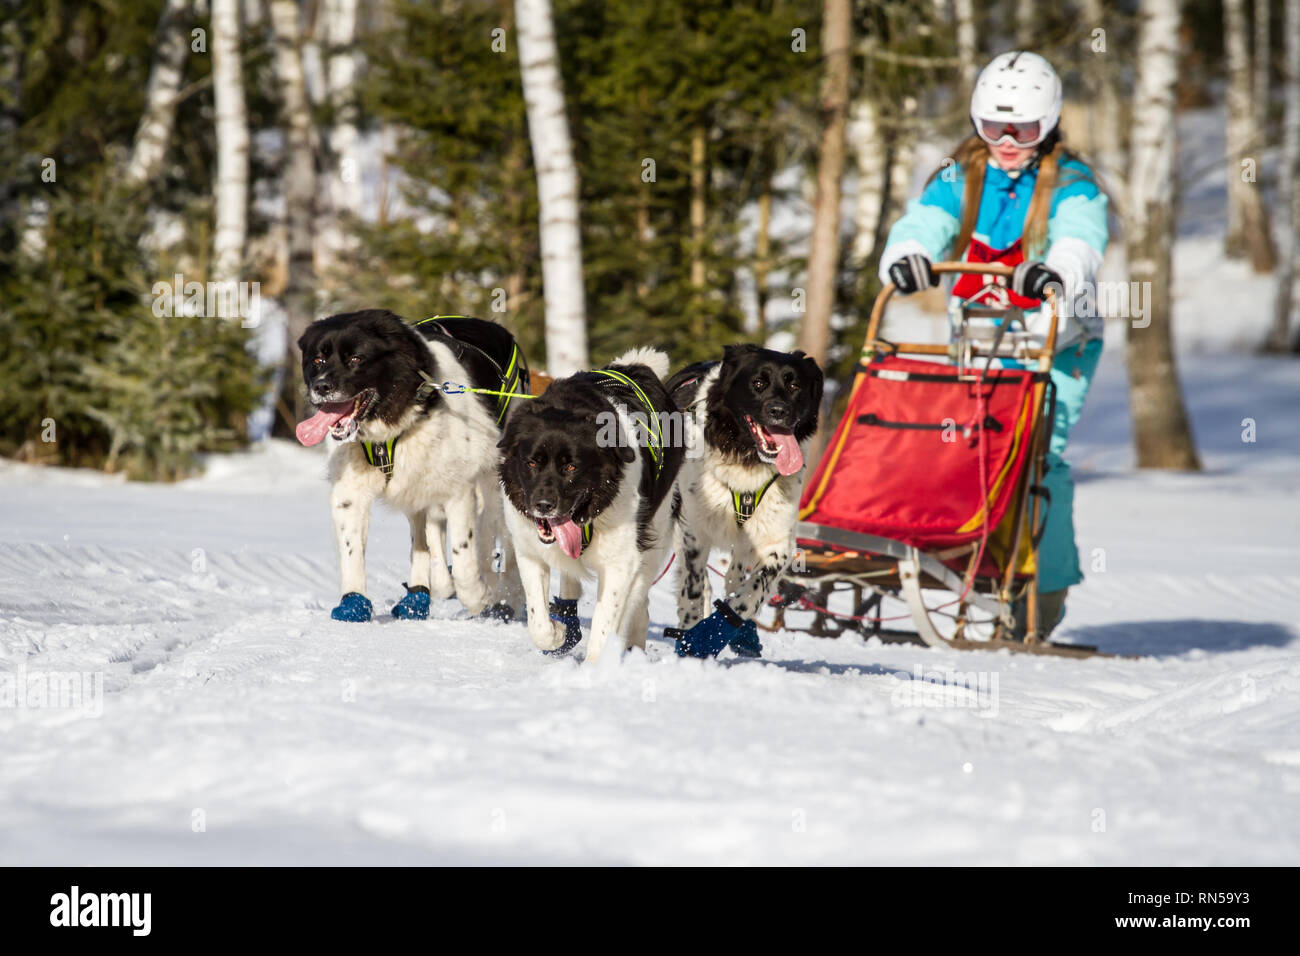 Cesky horský pes (República Checa) @ Mountain Dog Sled Dog Race, República Checa Foto de stock